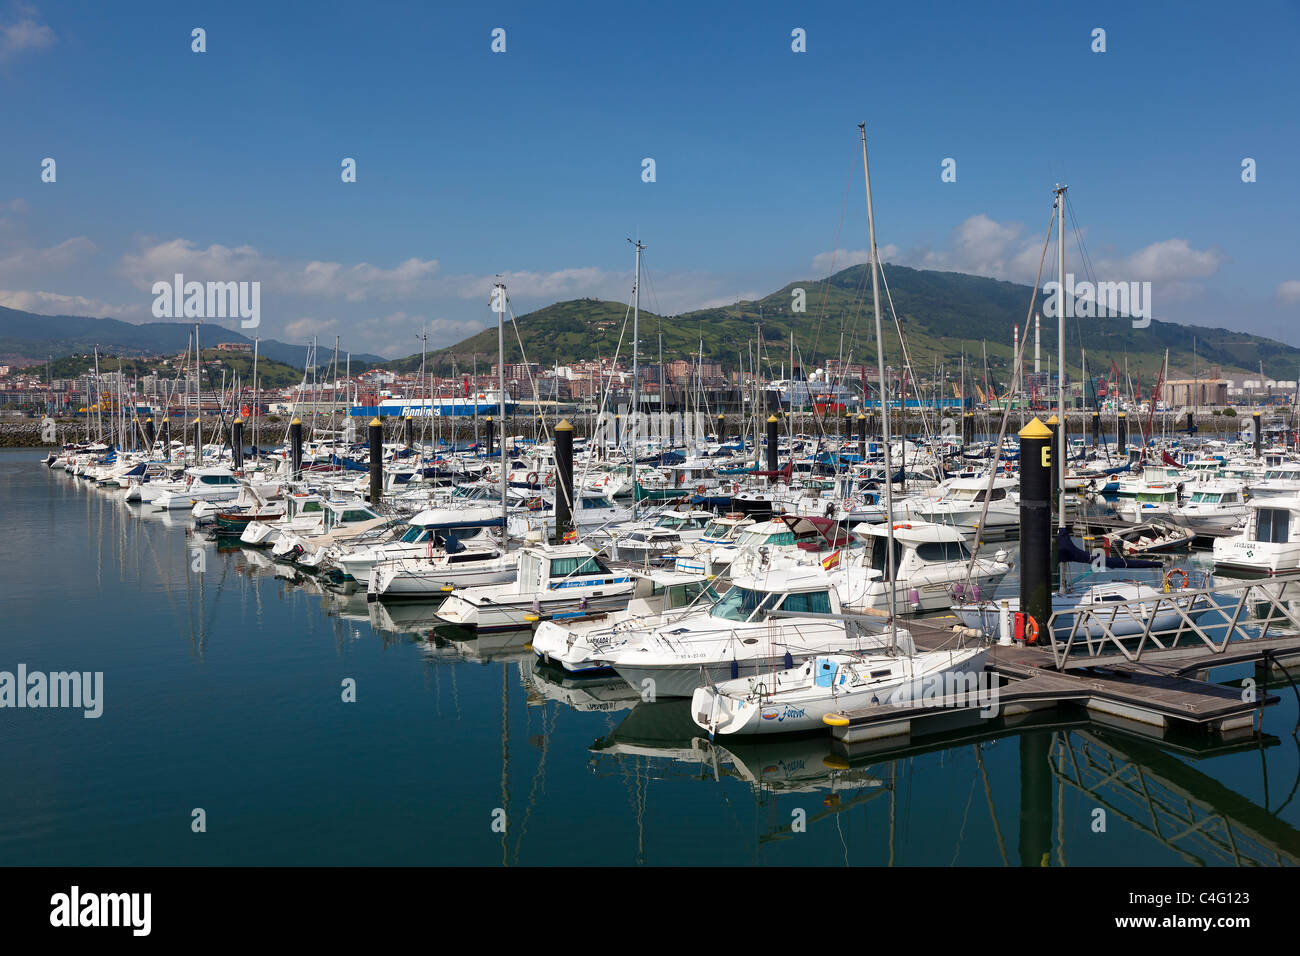 Port of Algorta, Getxo, Bizkaia, Spain Stock Photo